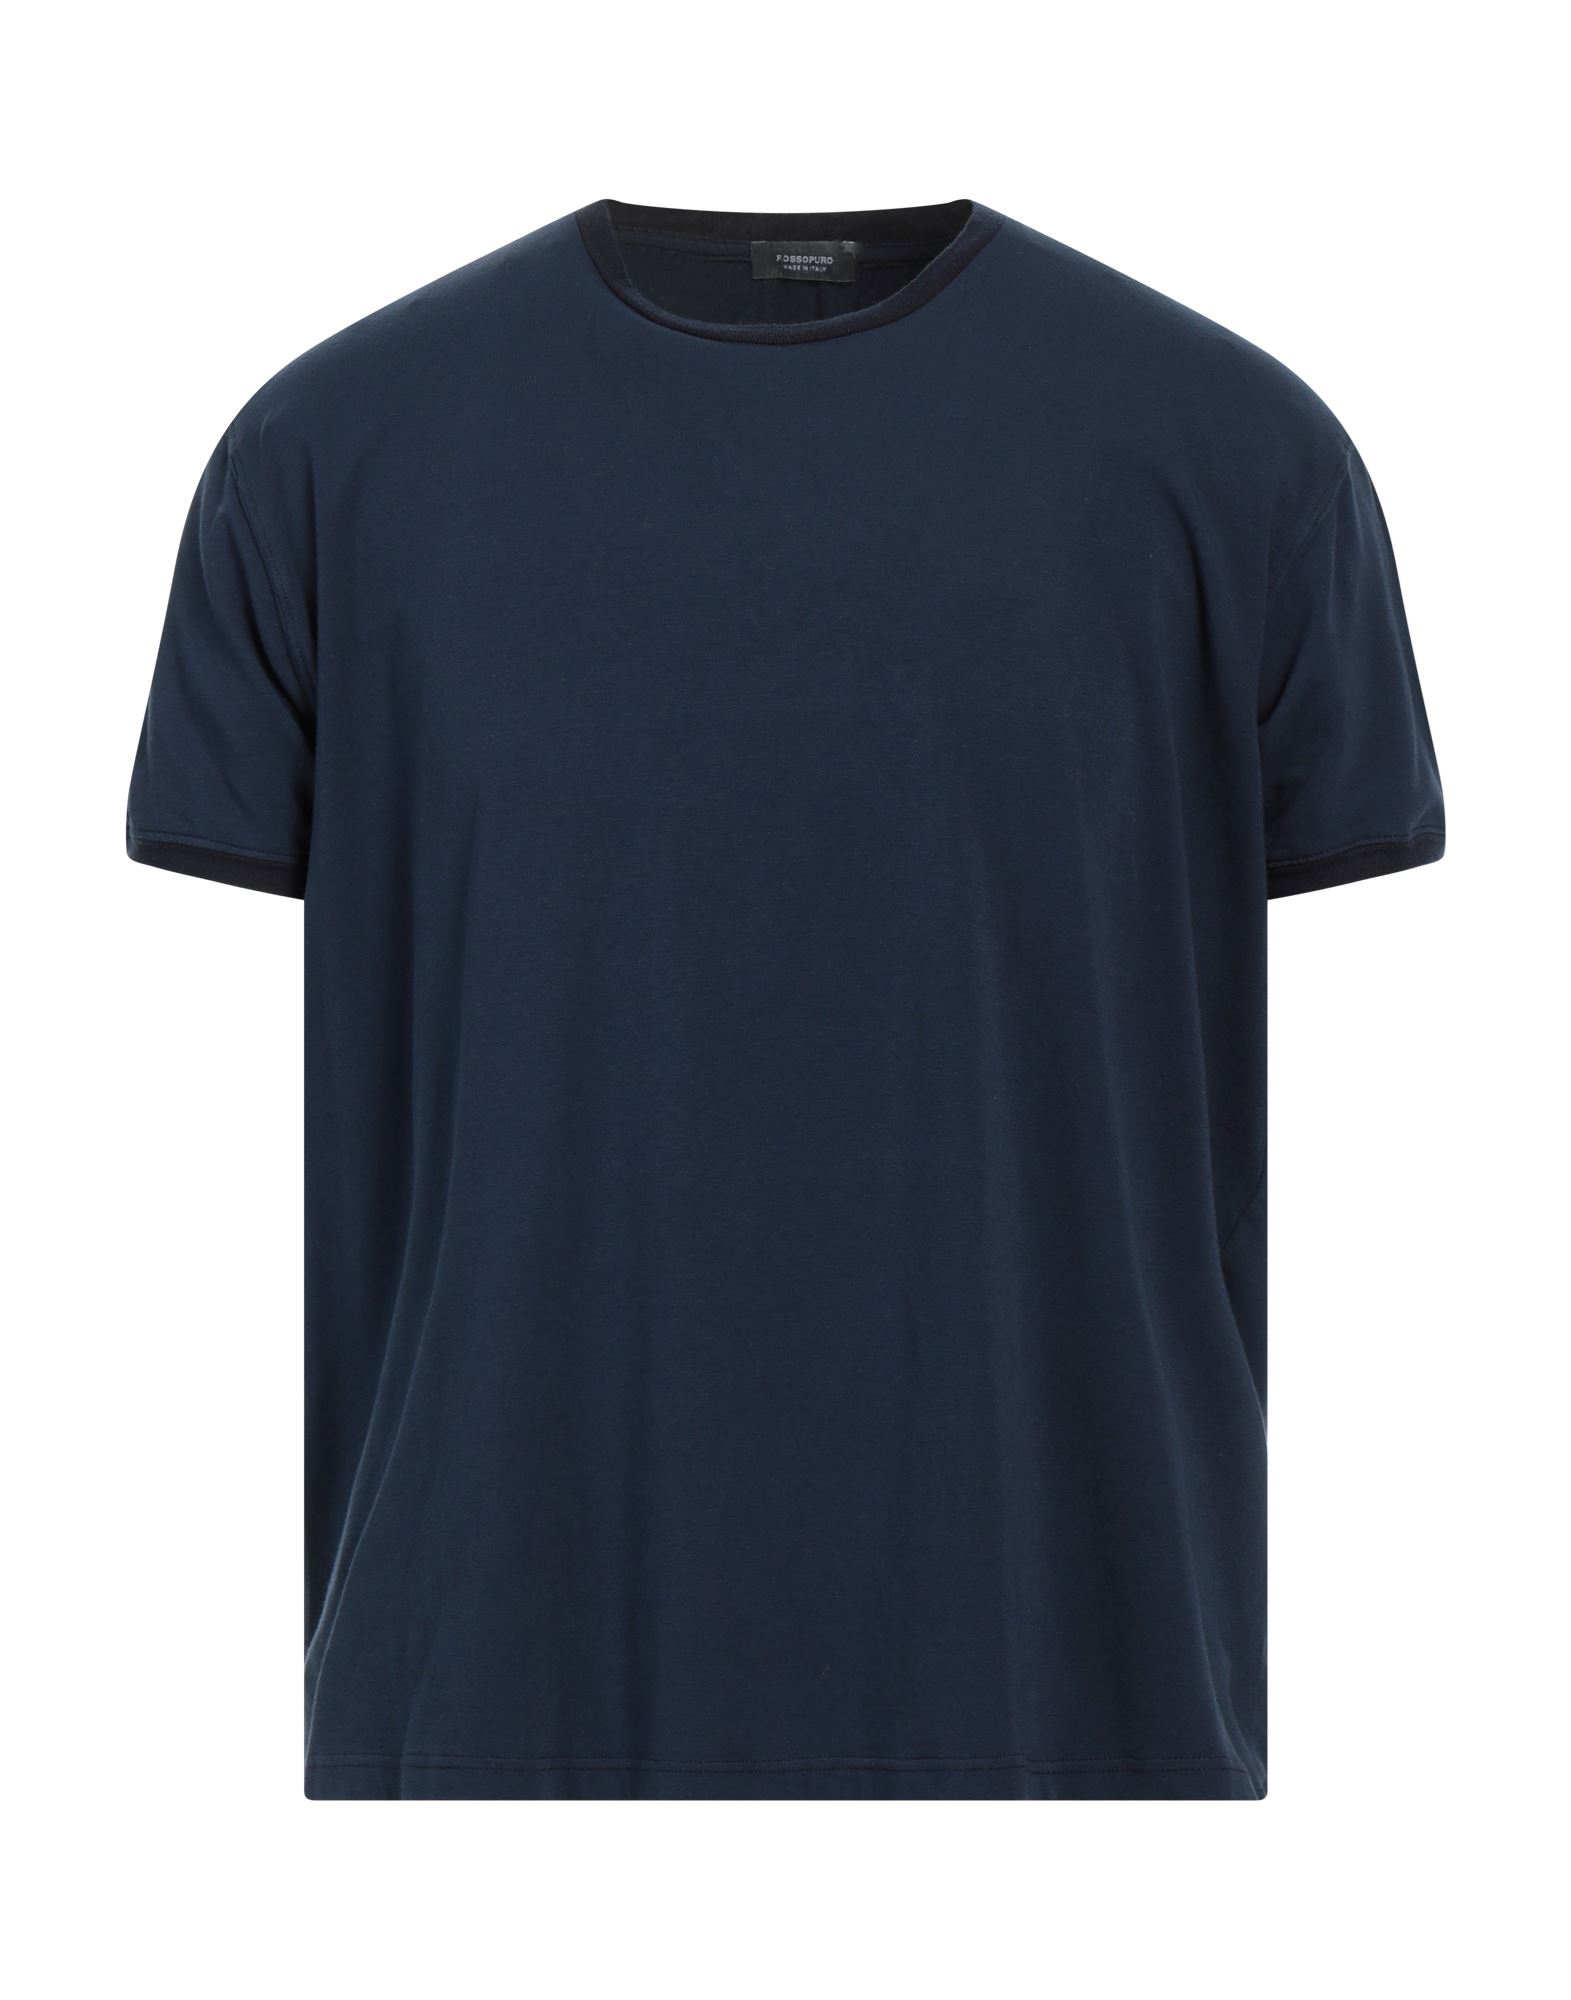 ROSSOPURO T-shirts Herren Nachtblau von ROSSOPURO